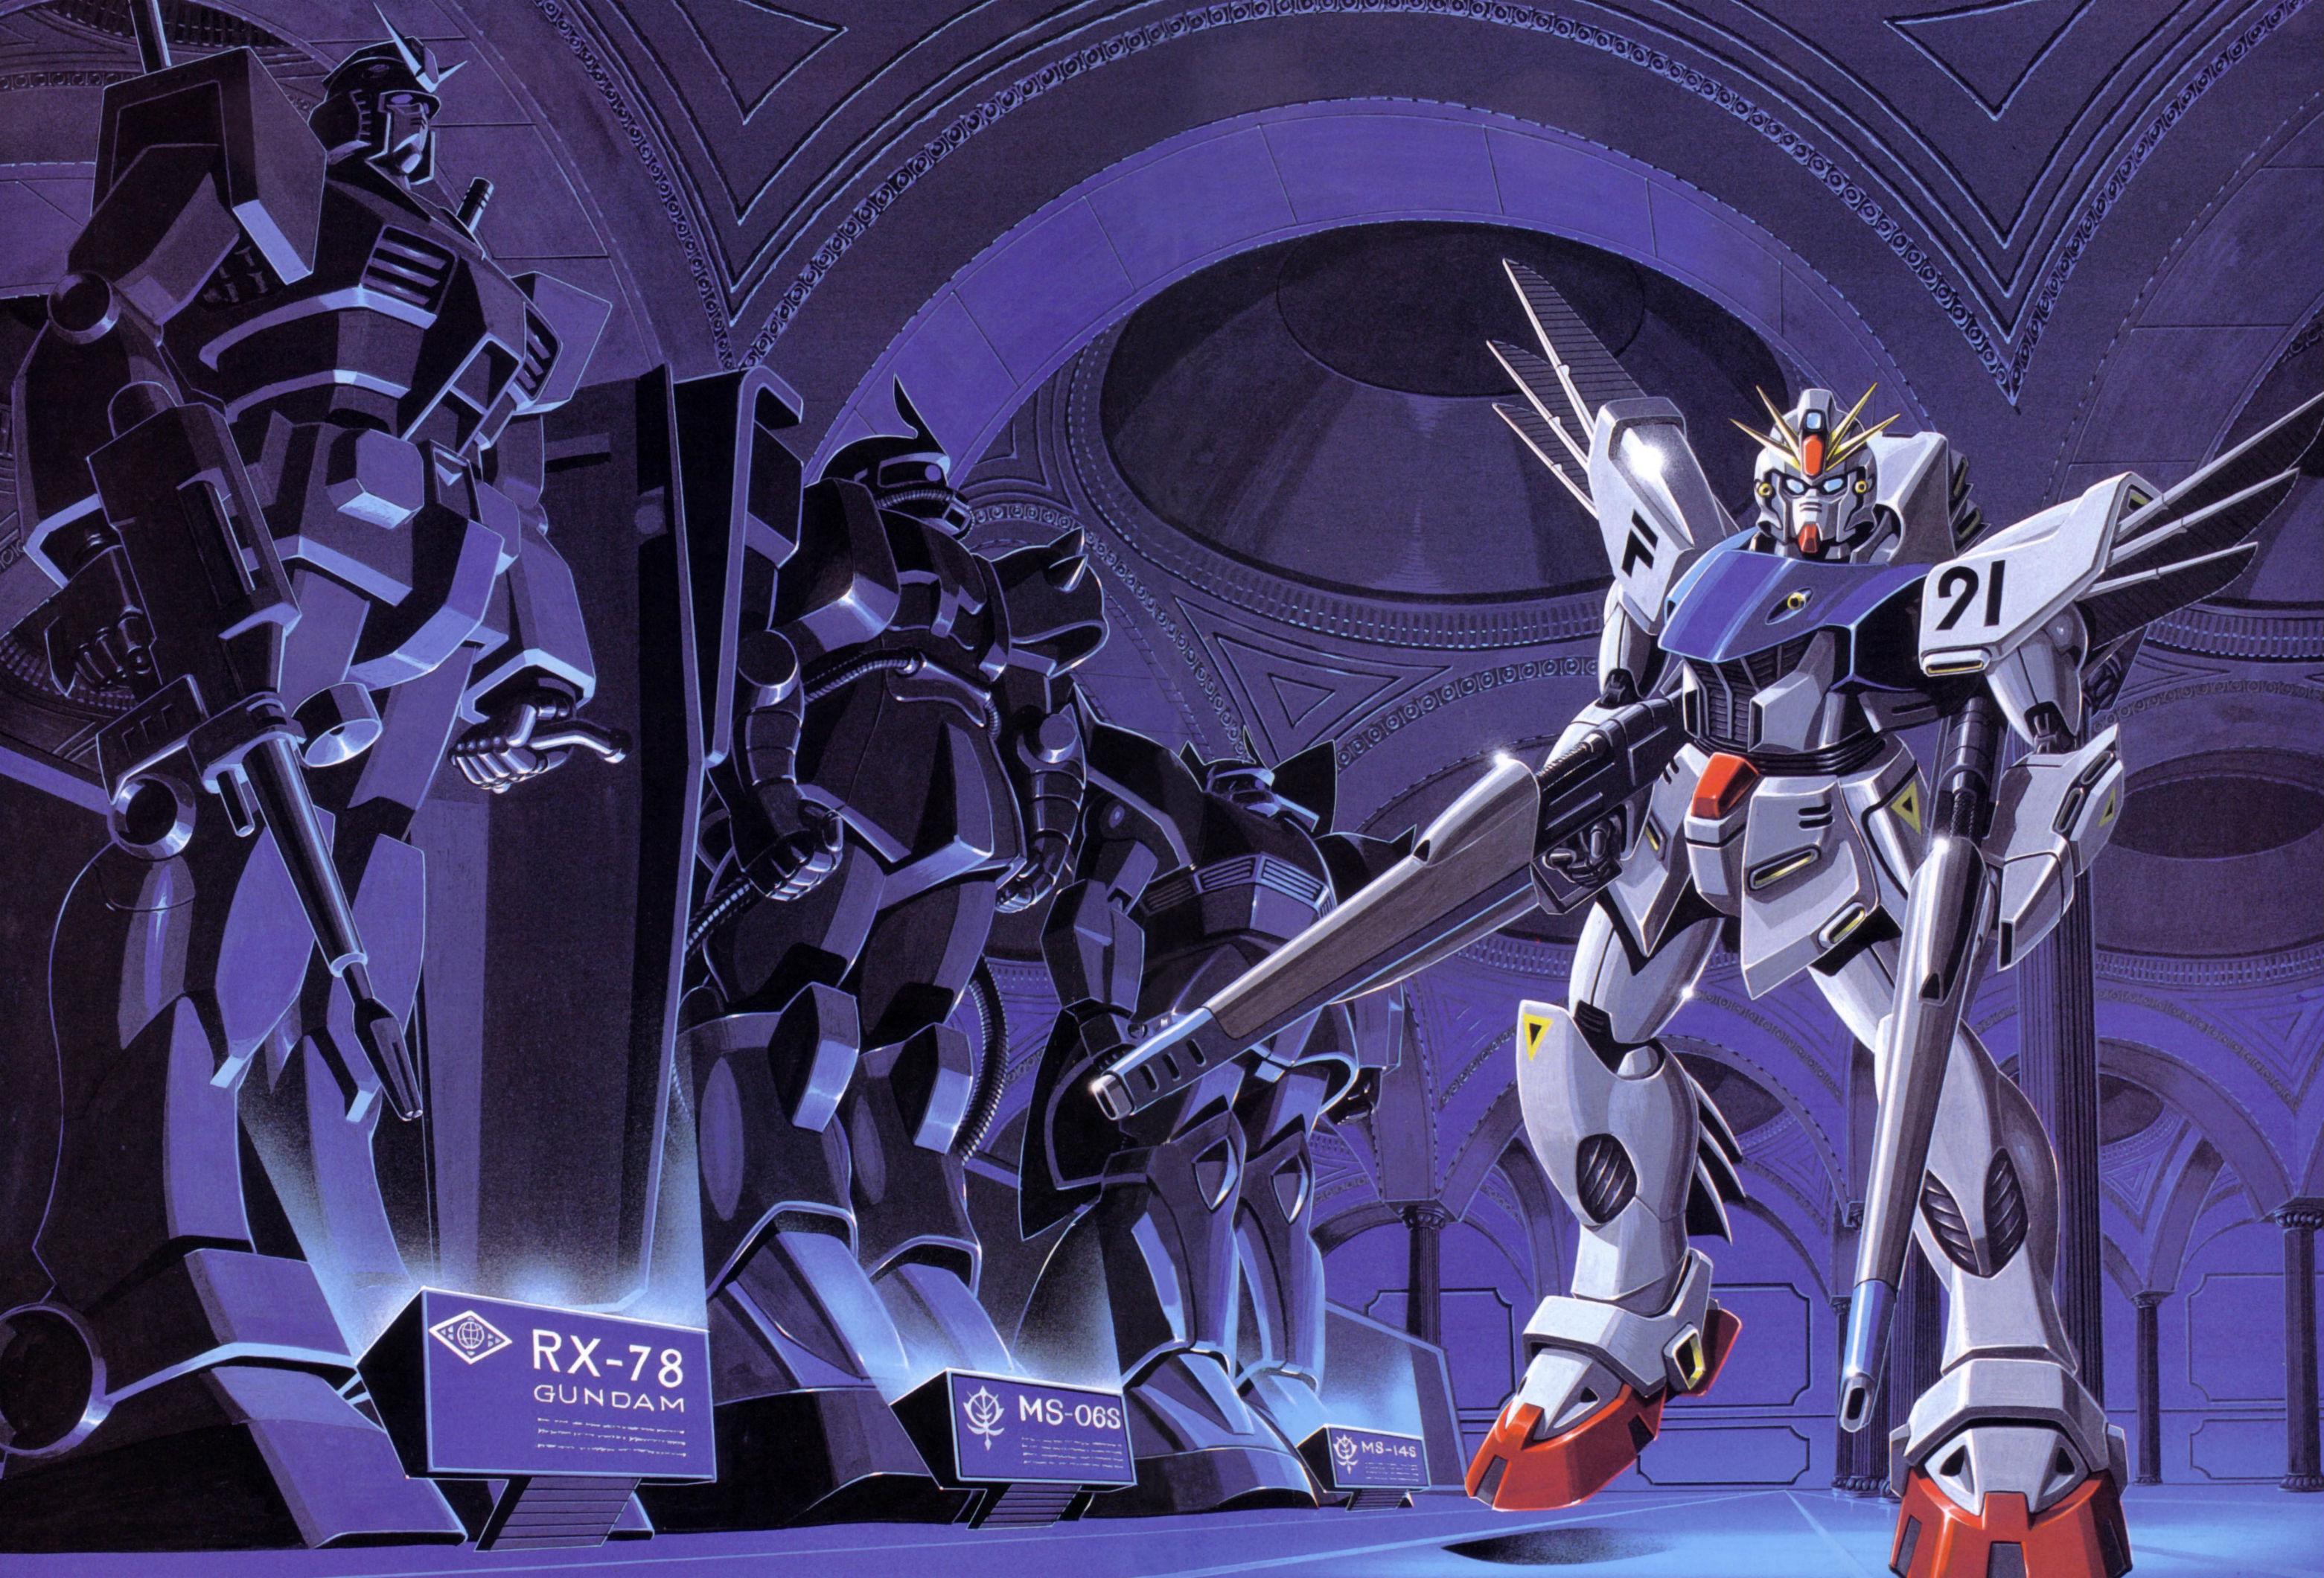 Gundam F91 Wallpapers Top Free Gundam F91 Backgrounds Wallpaperaccess